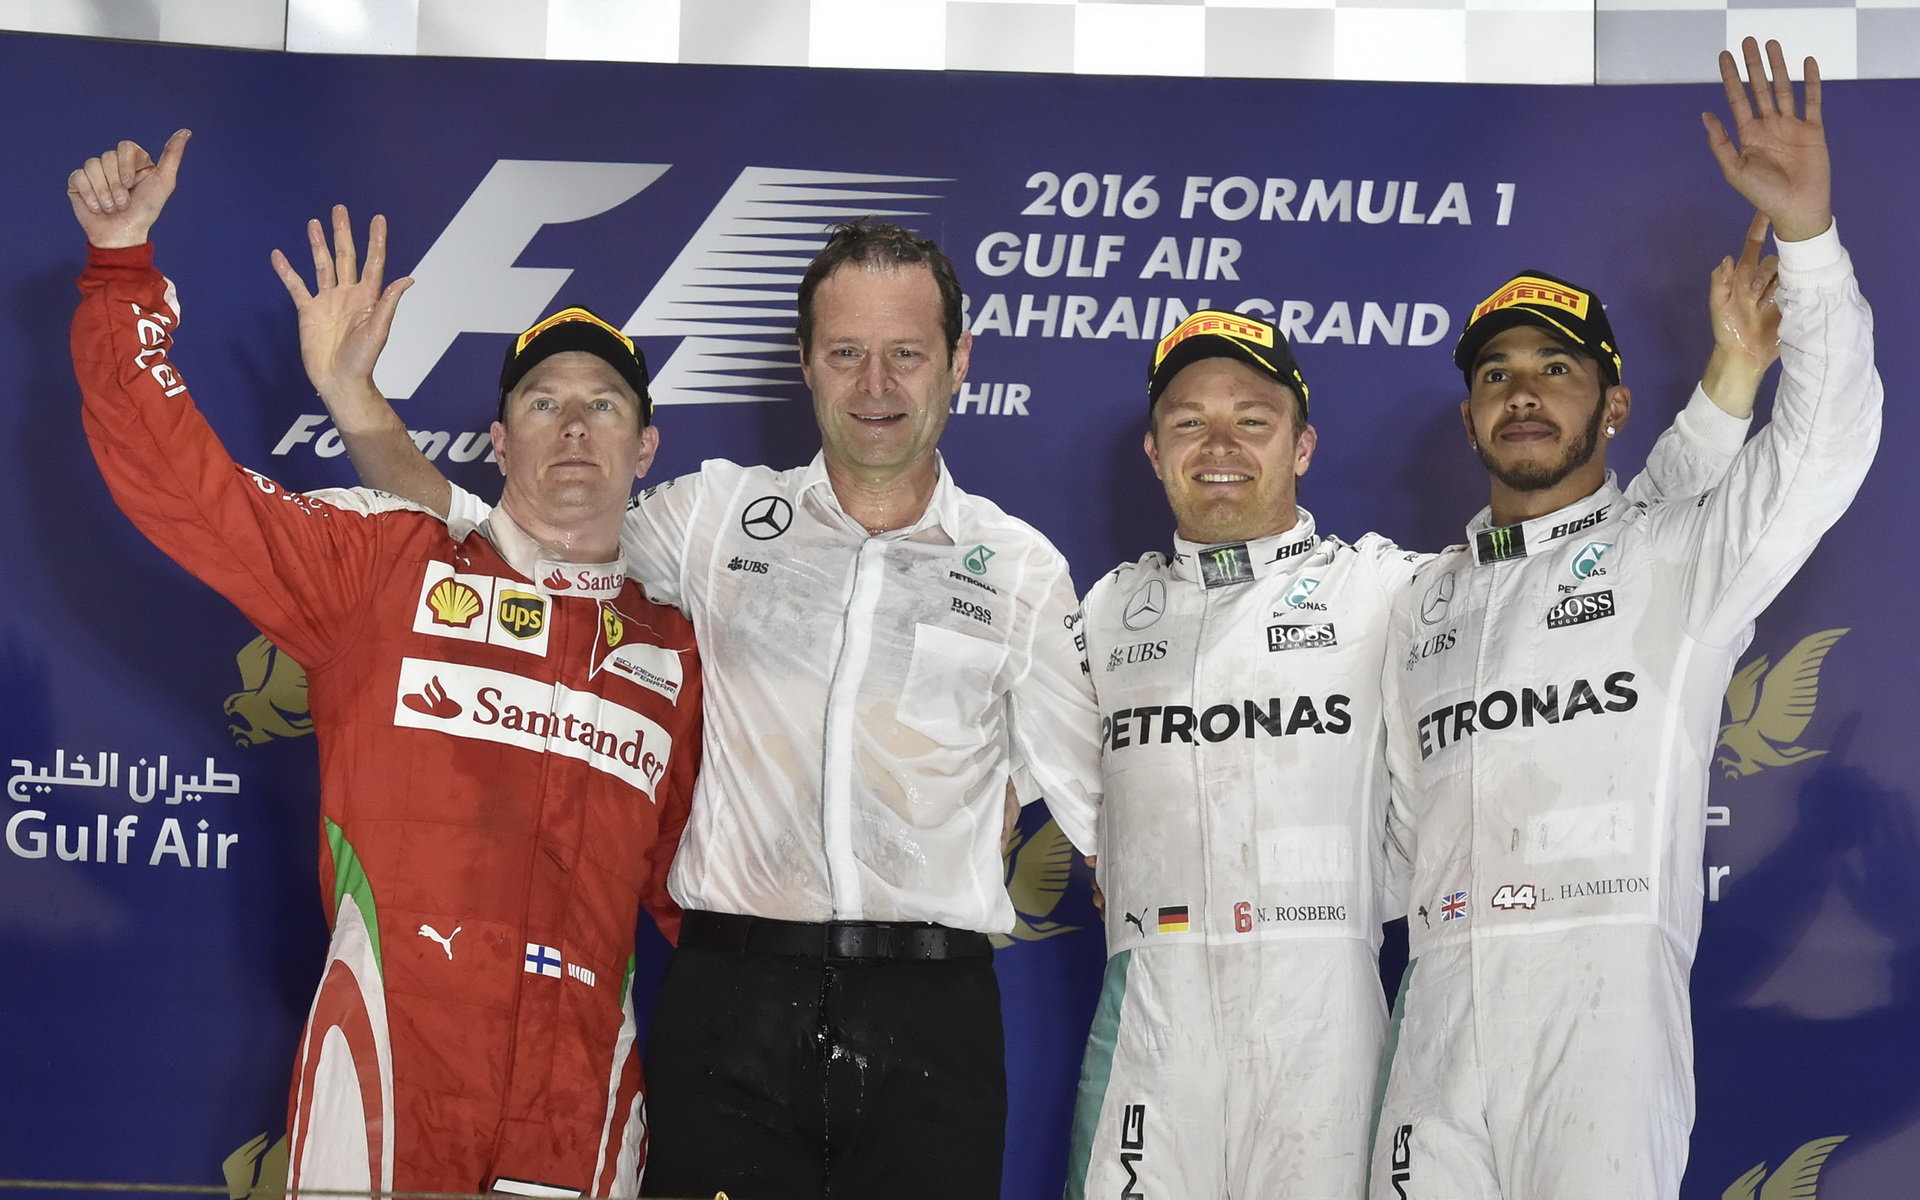 Vítězové na pódiu po závodě v Bahrajnu